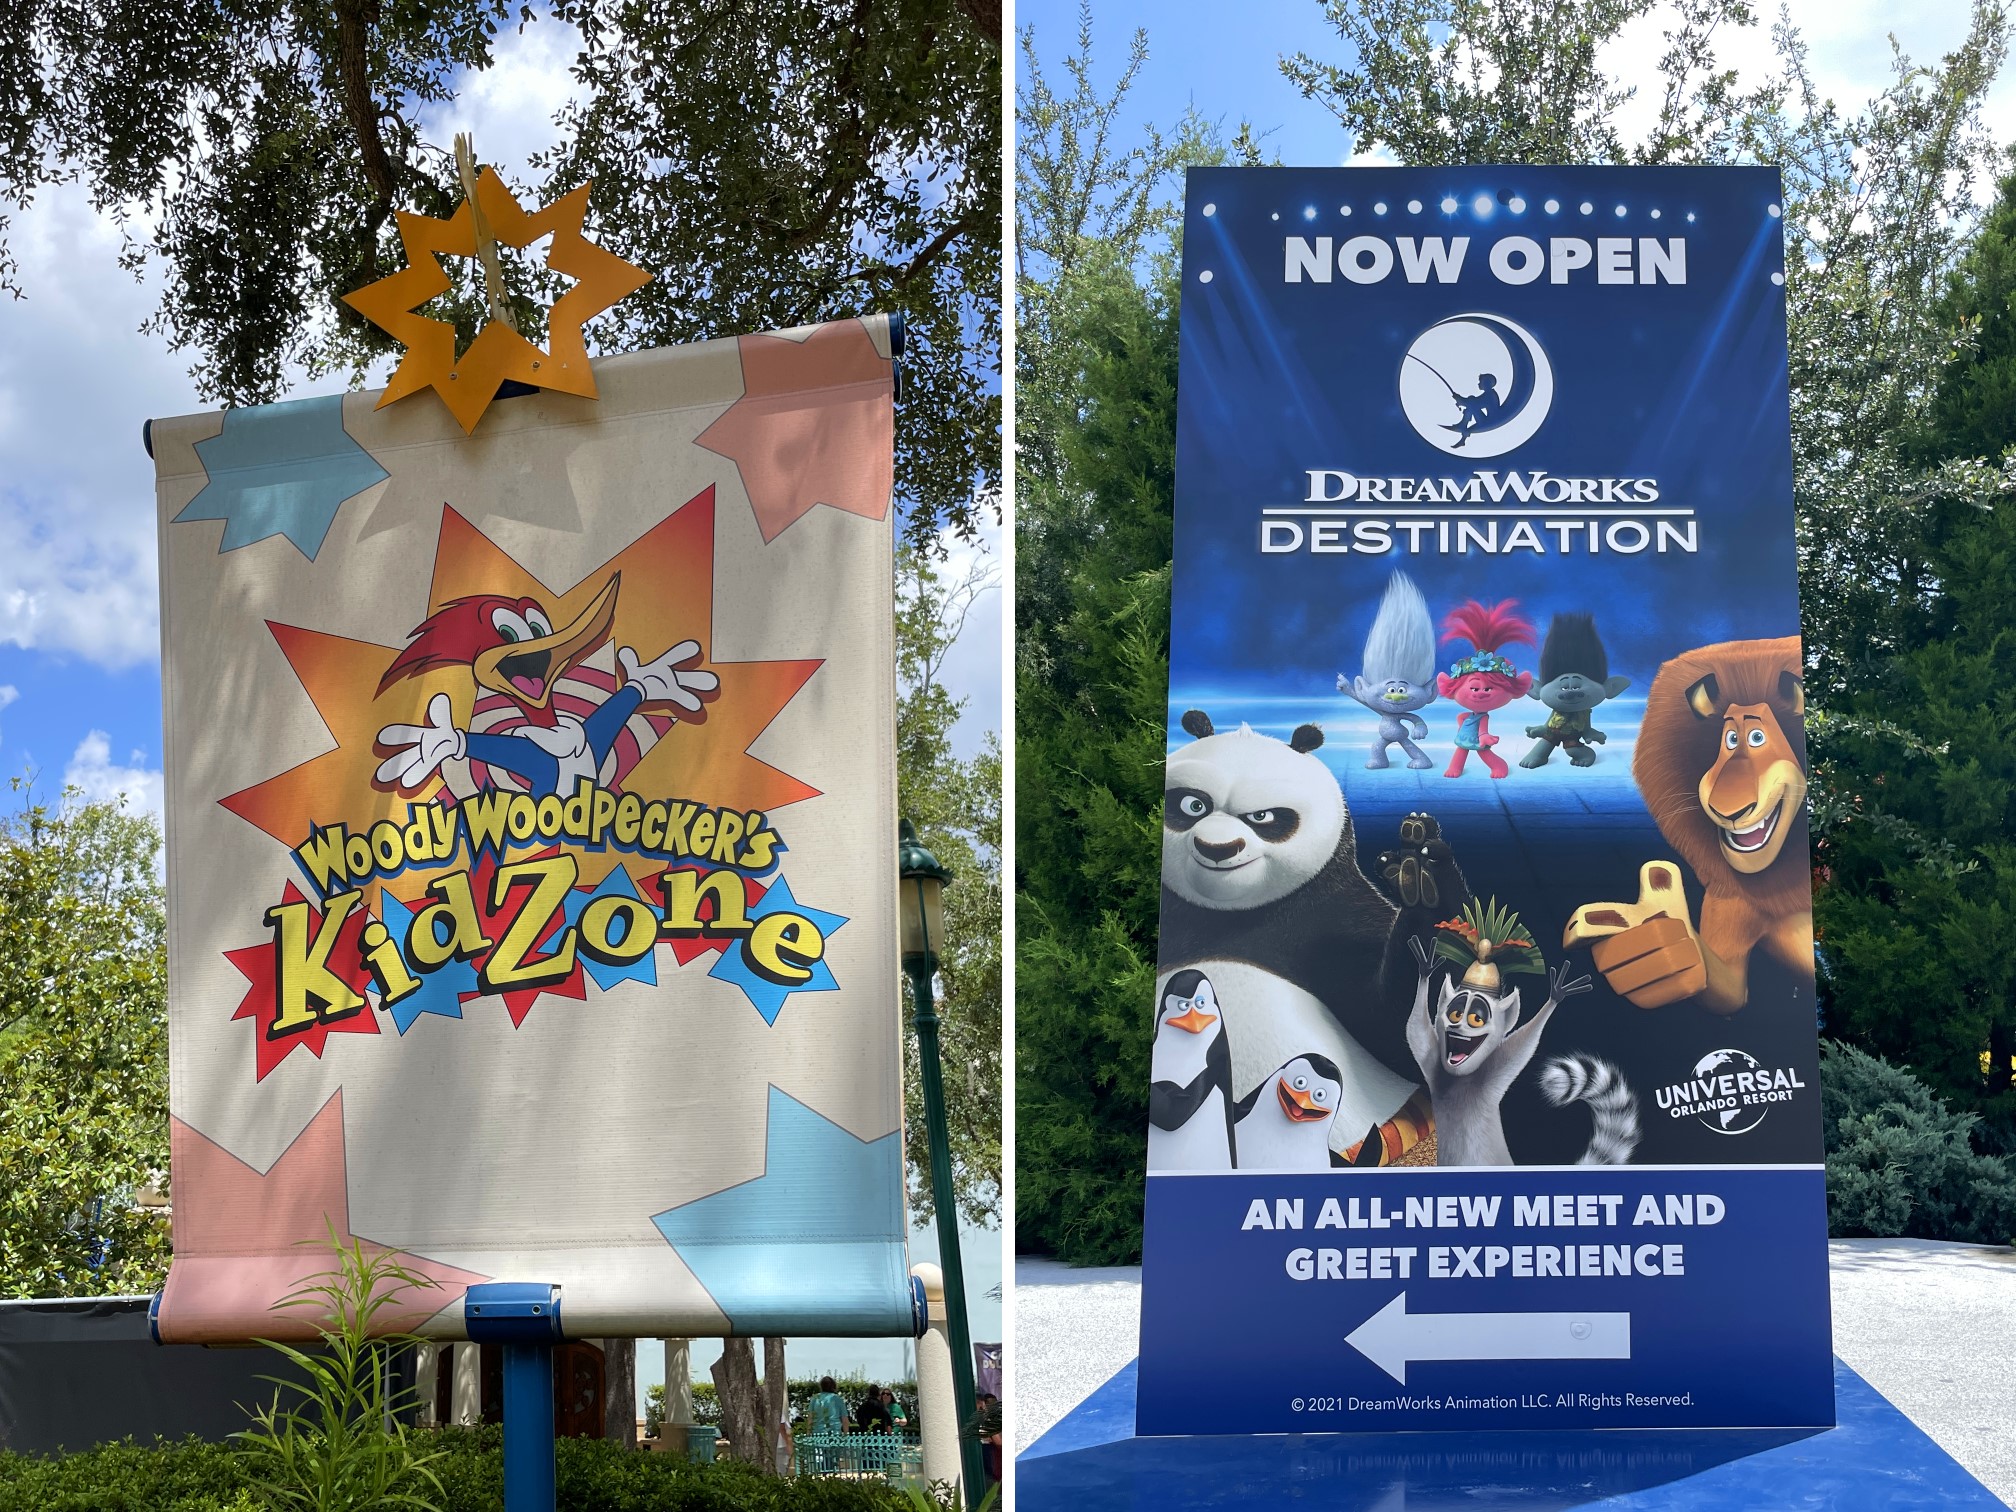 KidZone cerrará oficialmente en enero de 2023 en Universal Studios